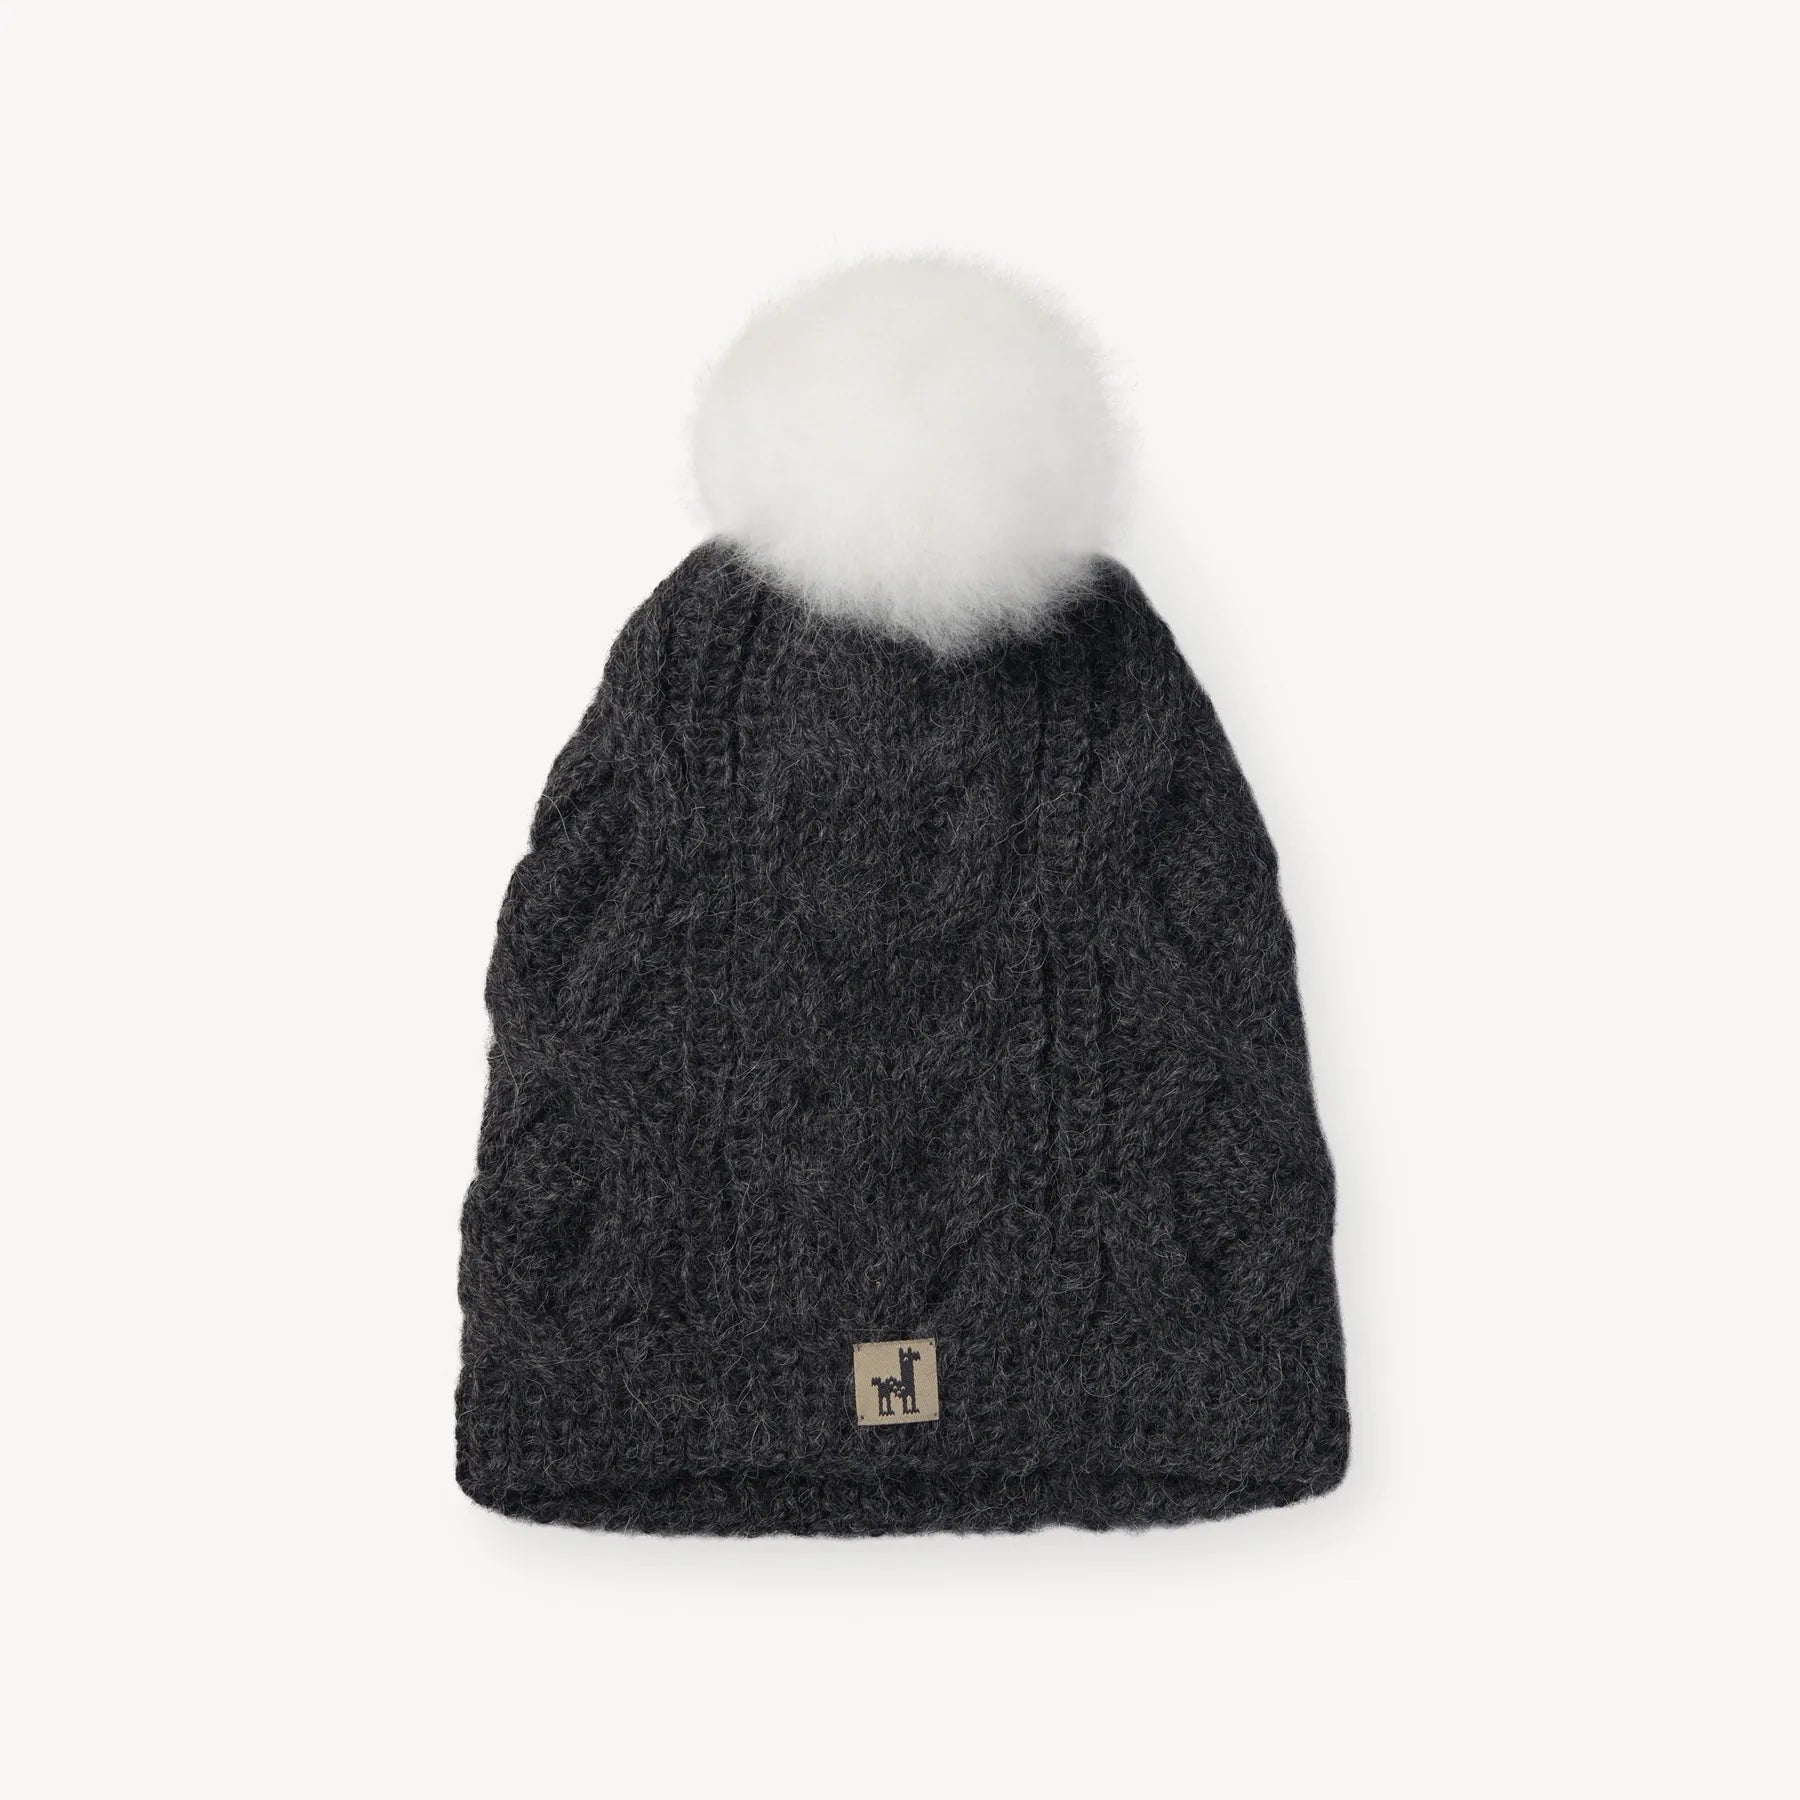 Bonnets laine homme, chaleur et confort - La Maison de l'Alpaga